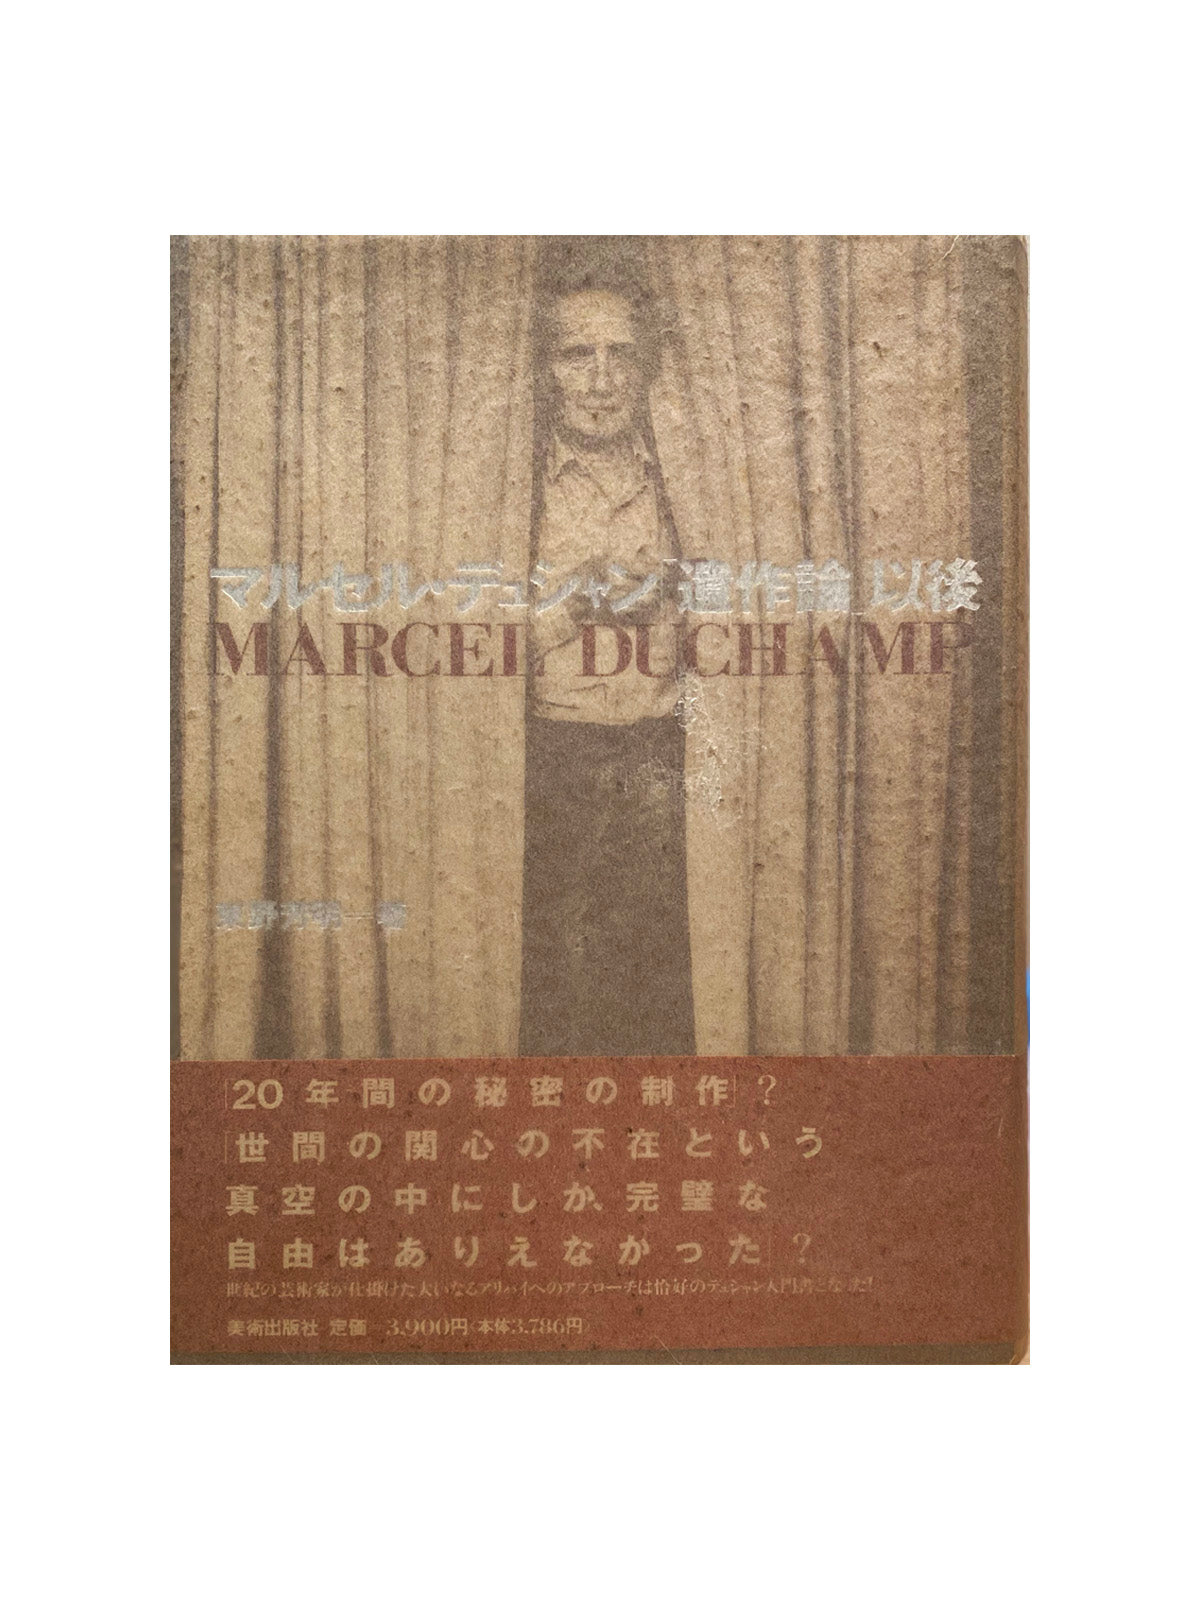 マルセル・デュシャン「遺作論」以後 / 東野芳明 – KIKAbooks